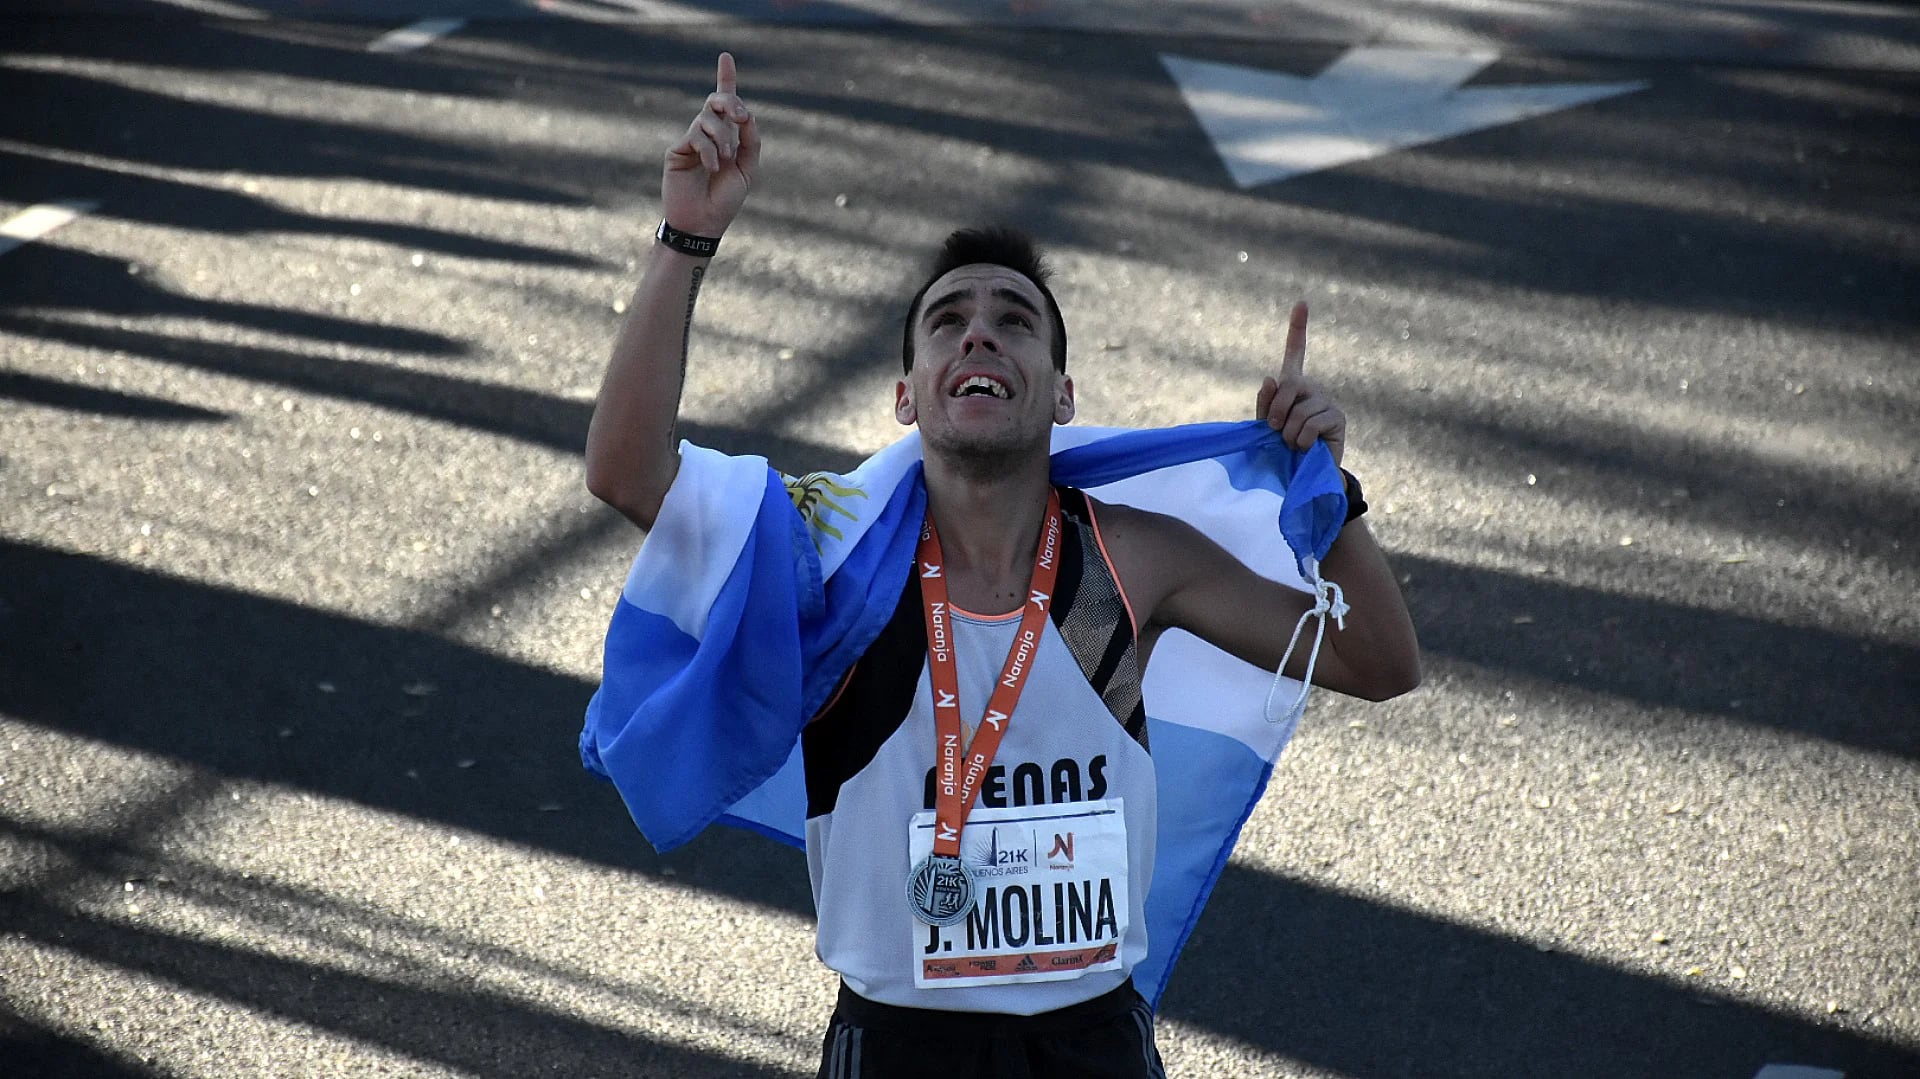 El año pasado, Julián Molina fue el primero de los argentinos en cruzar la meta